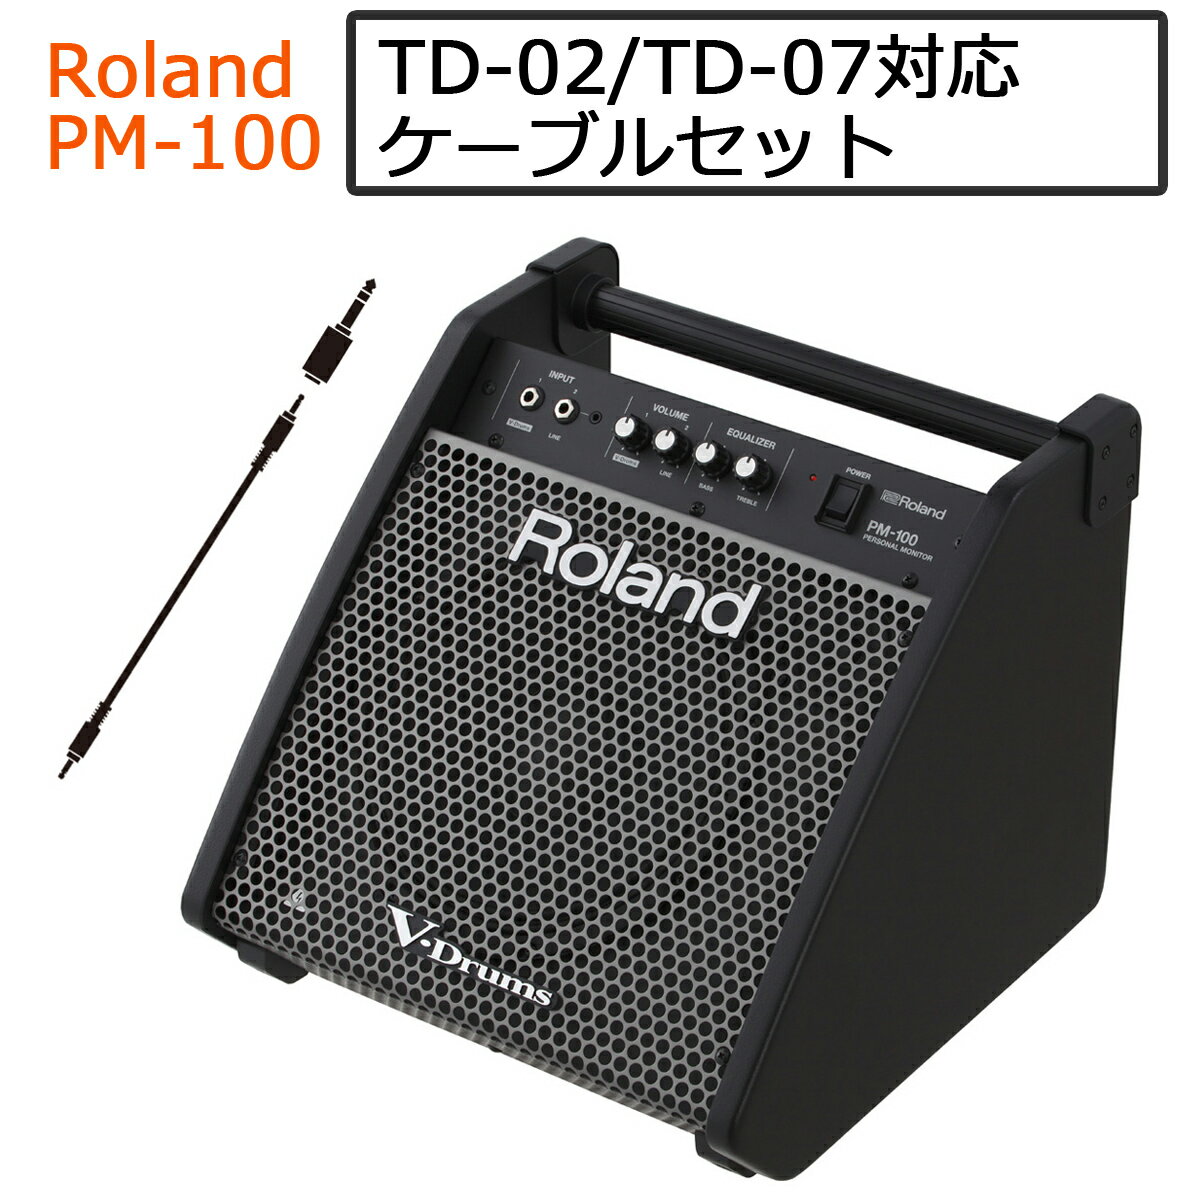 【あす楽対象商品】【TD-02対応】【TD-07対応】Roland / PM-100 電子ドラム用モニタースピーカー ステレオミニプラグケーブルセット【YRK】